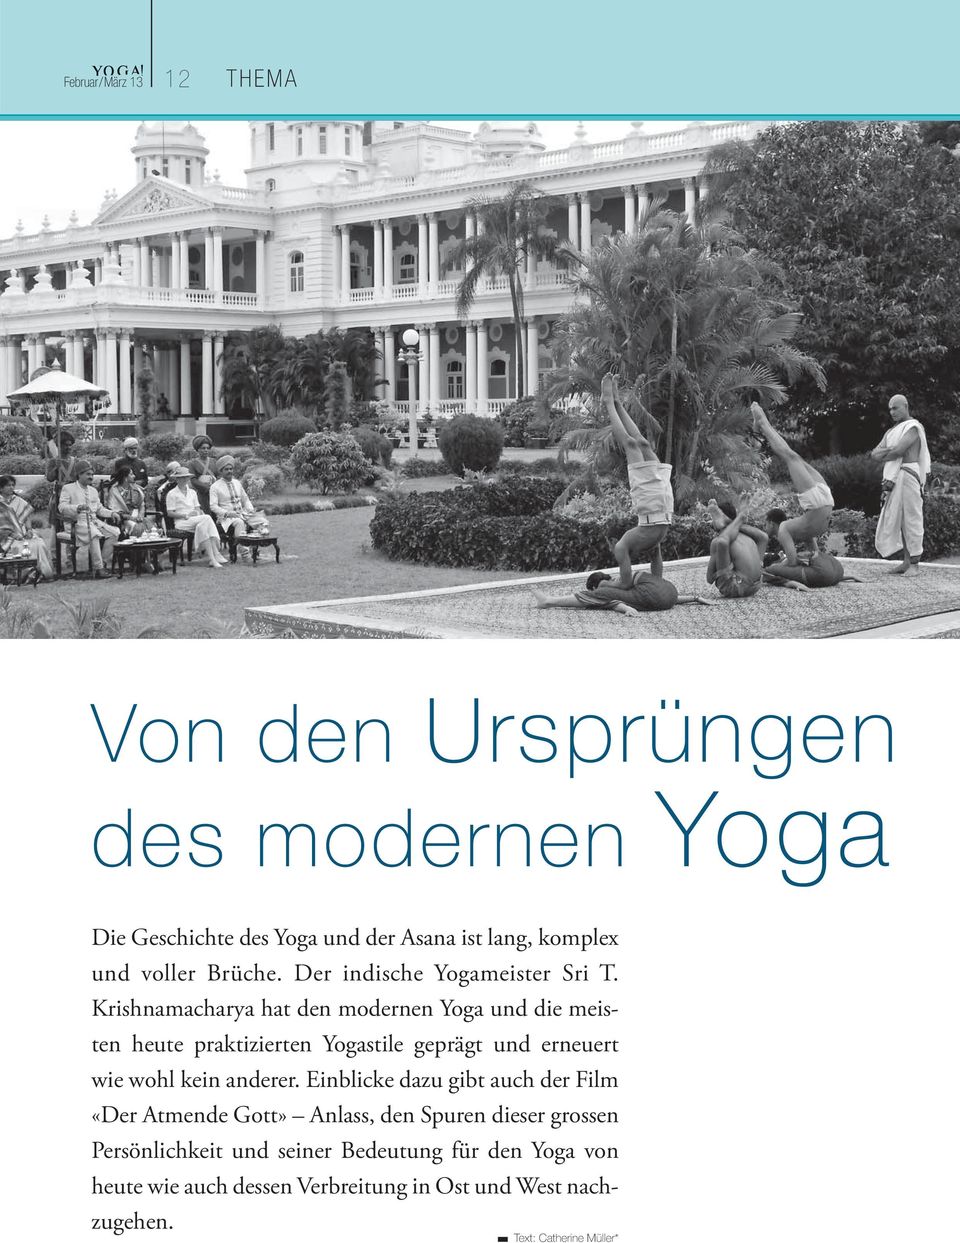 Krishnamacharya hat den modernen Yoga und die meisten heute praktizierten Yogastile geprägt und erneuert wie wohl kein anderer.